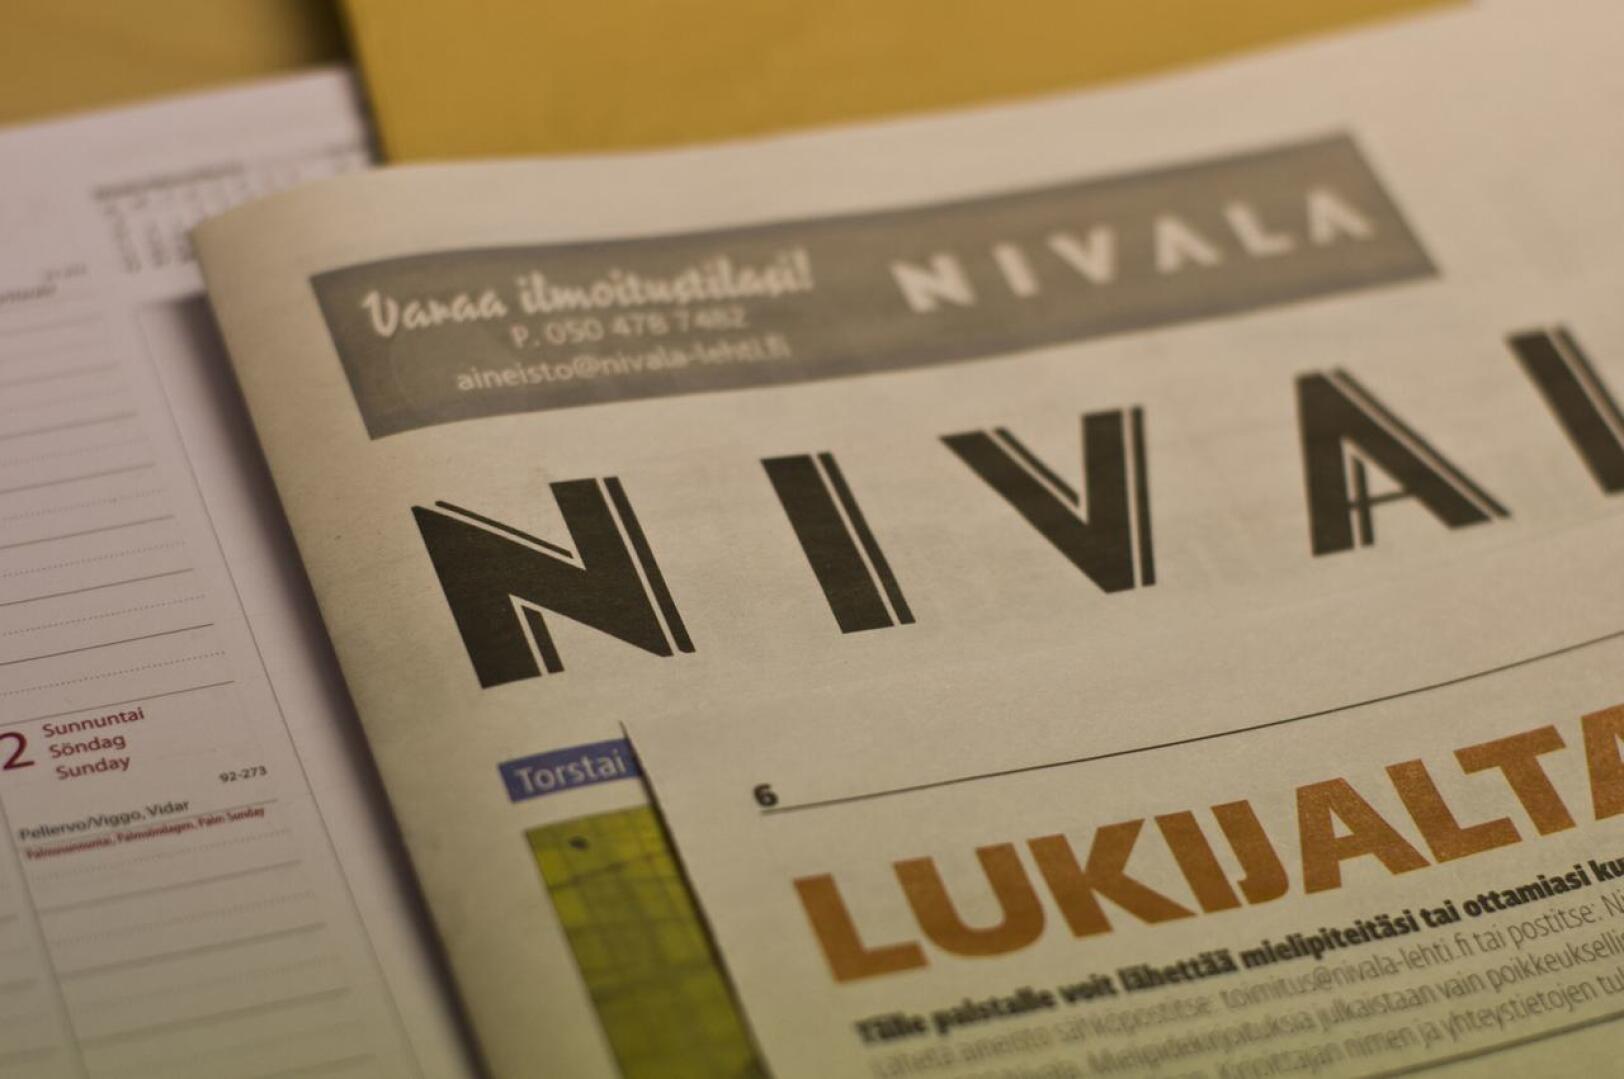 Nivala-lehti julkaisee mielellään eduskuntavaalien ehdokkaiden mielipidekirjoituksia, kunhan kriteerit täyttyvät.